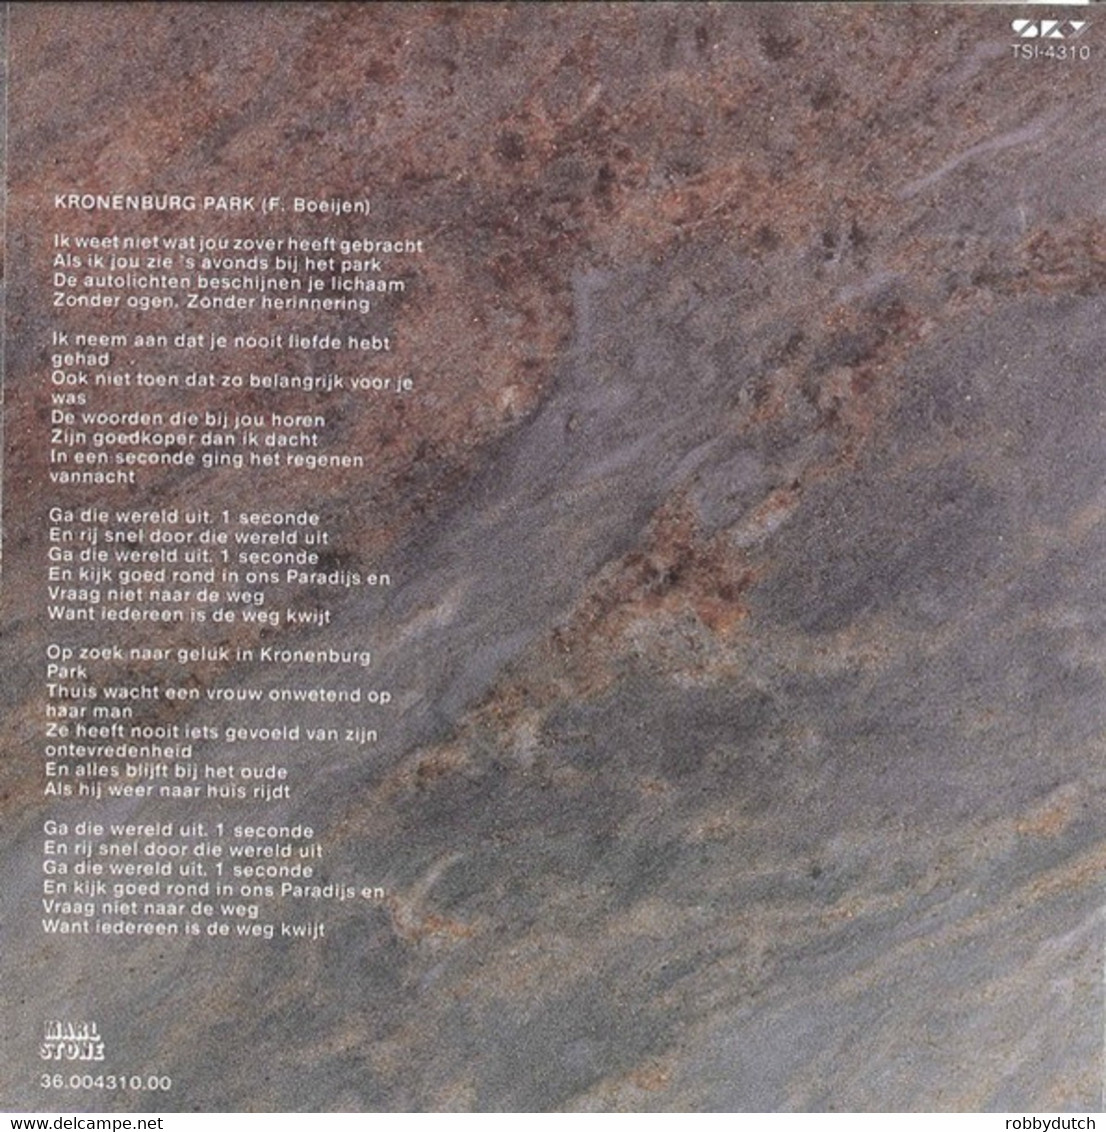 *7" * FRANK BOEIJEN GROEP - KRONENBURG PARK (Holland 1985 EX!!) - Autres - Musique Néerlandaise